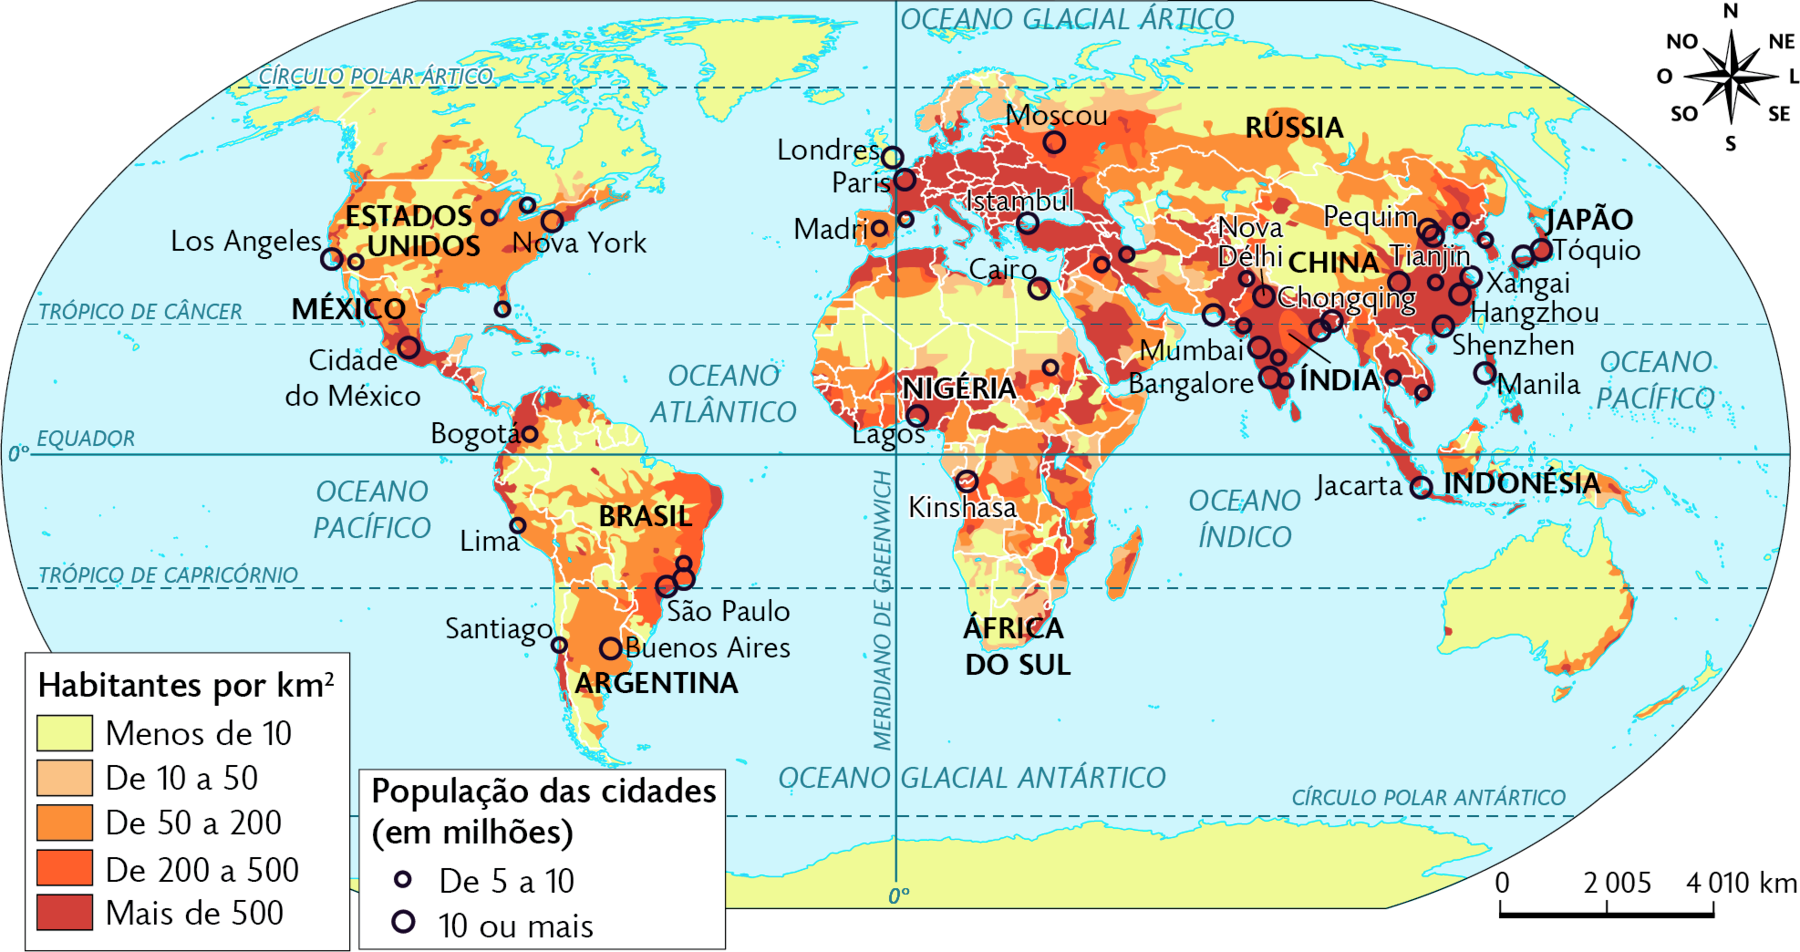 Mapa. Mundo: densidade demográfica (2021). Habitantes por quilômetros quadrados. Menos de 10: norte e centro da América do Norte, norte e centro da Ásia, norte e oeste da América do Sul, norte e sul da África e Oceania. De 50 a 200: áreas pequenas dispersas no sul da Ásia, leste da África e da América Central. De 10 a 50: leste, oeste e sul da América do Norte, norte, sudoeste e leste  da América do Sul, centro, oeste e leste da Ásia, área dispersas no leste, e oeste da África, sudeste e leste da Oceania. De 200 a 500: oeste da Ásia, costa leste da América do Sul e áreas dispersas na região central da África. Mais de 500: sul da América do Norte, oeste da América central, norte da América do Sul, norte e áreas no centro da África, Europa, sudoeste, sul e sudeste da Ásia. População das cidades. (em milhões). De 5 a 10: duas nos Estados Unidos, Lima, Santiago, e outra no Brasil. Madri, na Europa; quatro cidades na Índia, duas na China, uma no Japão. 10 ou mais: Los Angeles e Nova York nos Estados Unidos, Cidade do México no México, Buenos Aires na Argentina, São Paulo e Rio de Janeiro no Brasil, Cairo, Lagos e Kinshasa na África; Londres e Paris na Europa, Istambul na Turquia, Moscou na Rússia, Nova Délhi, Mumbai, Bangalore e outras duas cidades na Índia, Pequim, Tianjin, Chongqing, Xangai, Hangzhou, Shenzhen na China, Tóquio e outra cidade no Japão, Manila nas Filipinas. No canto superior direito, a rosa dos ventos. Na parte inferior, a escala: 2005 quilômetros por centímetro.